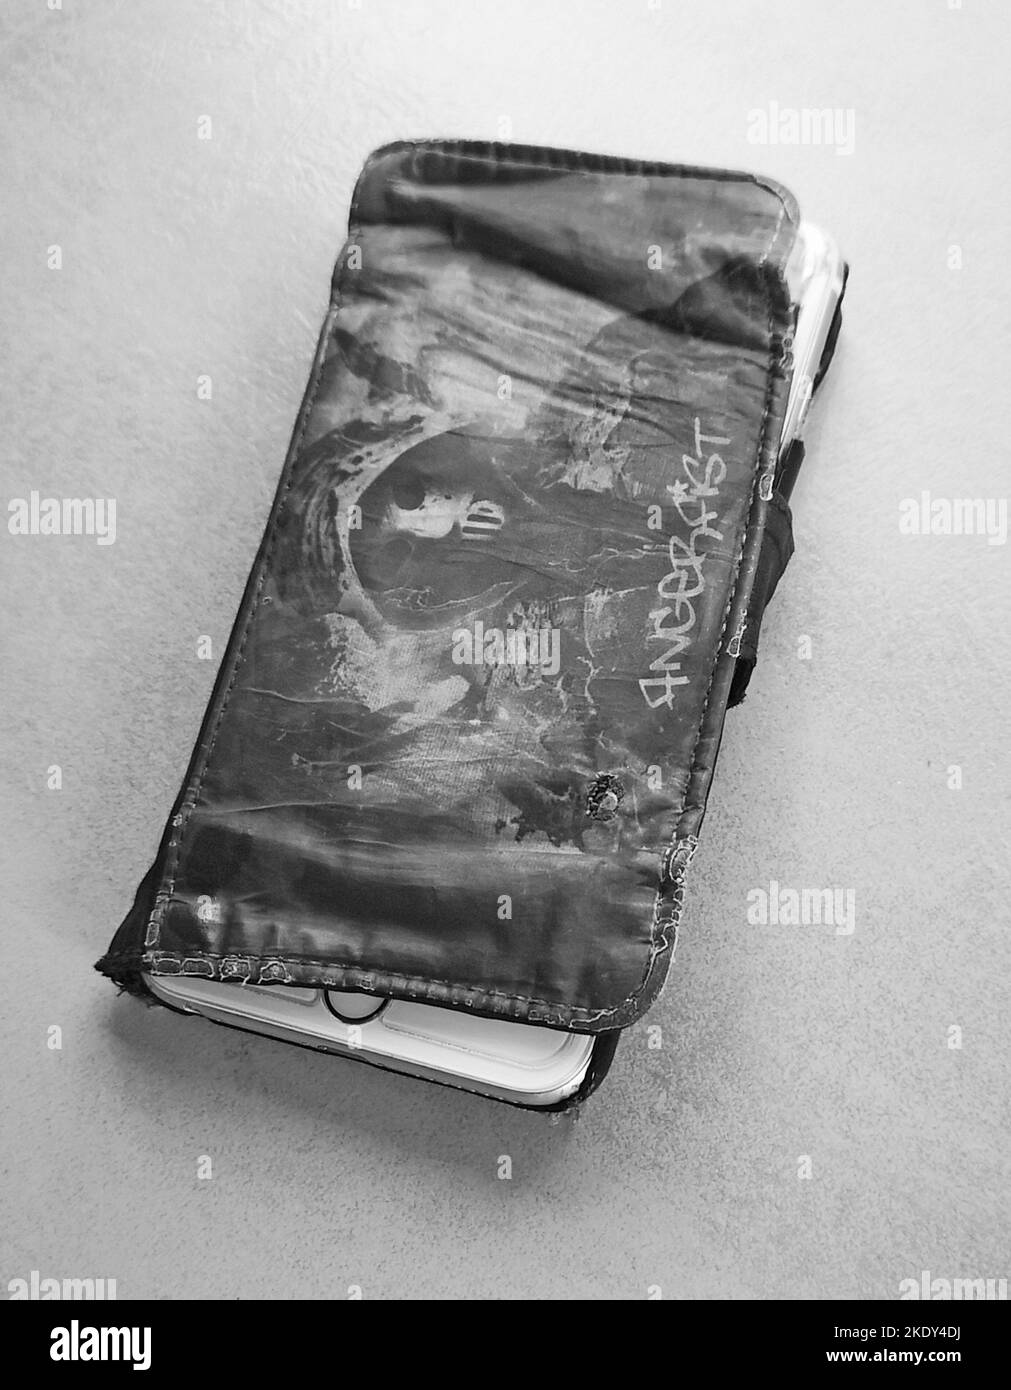 Caso de teléfono usado, negro gebrauchte Handyhuelle schwarzweiss negro y blanco Foto de stock